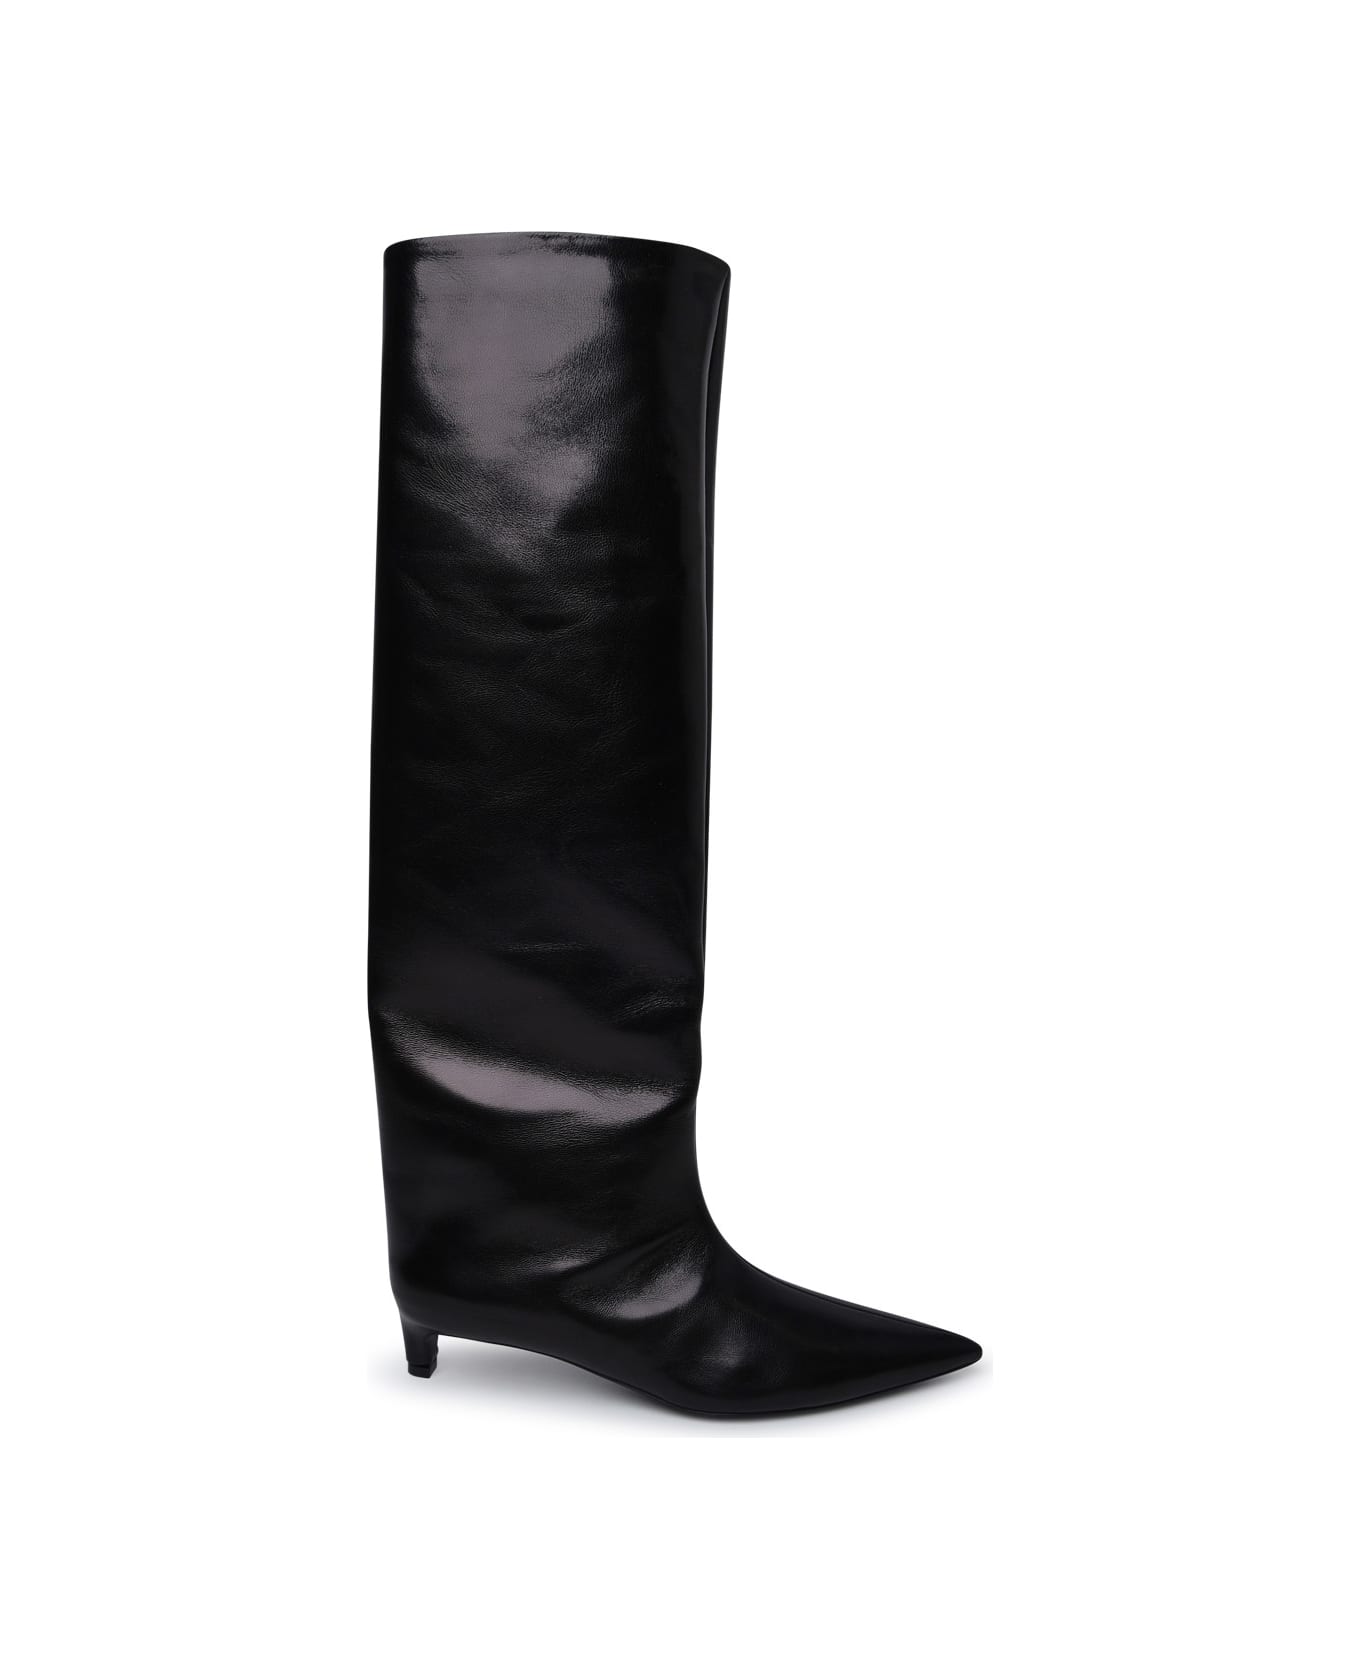 Jil Sander Black Leather Boots - Black